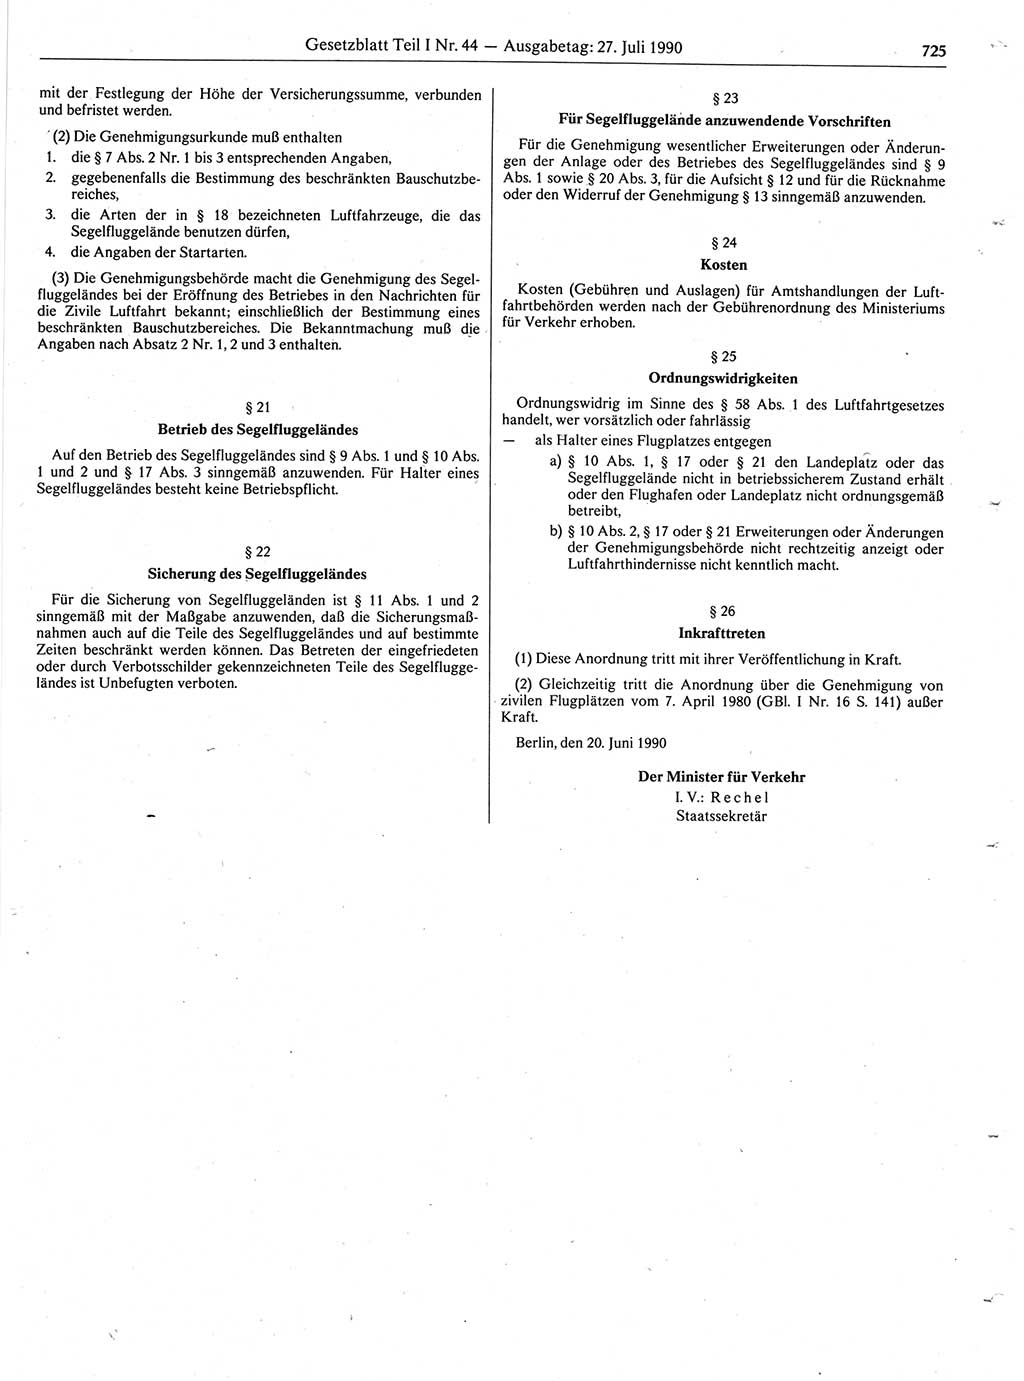 Gesetzblatt (GBl.) der Deutschen Demokratischen Republik (DDR) Teil Ⅰ 1990, Seite 725 (GBl. DDR Ⅰ 1990, S. 725)